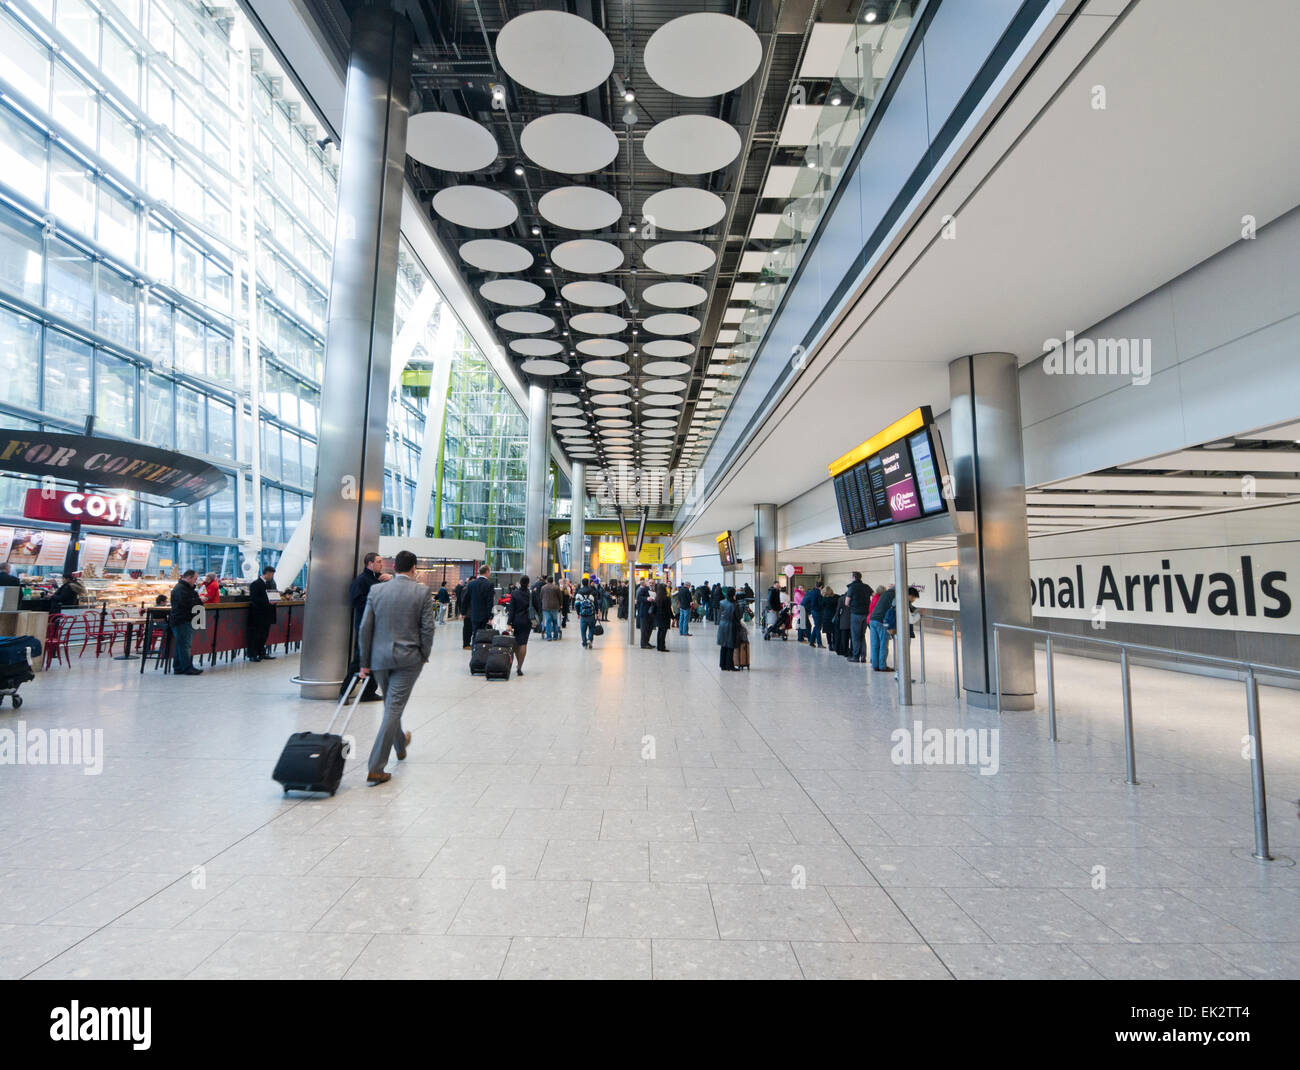 Las llegadas internacionales en el aeropuerto de Heathrow en Gran Bretaña Foto de stock